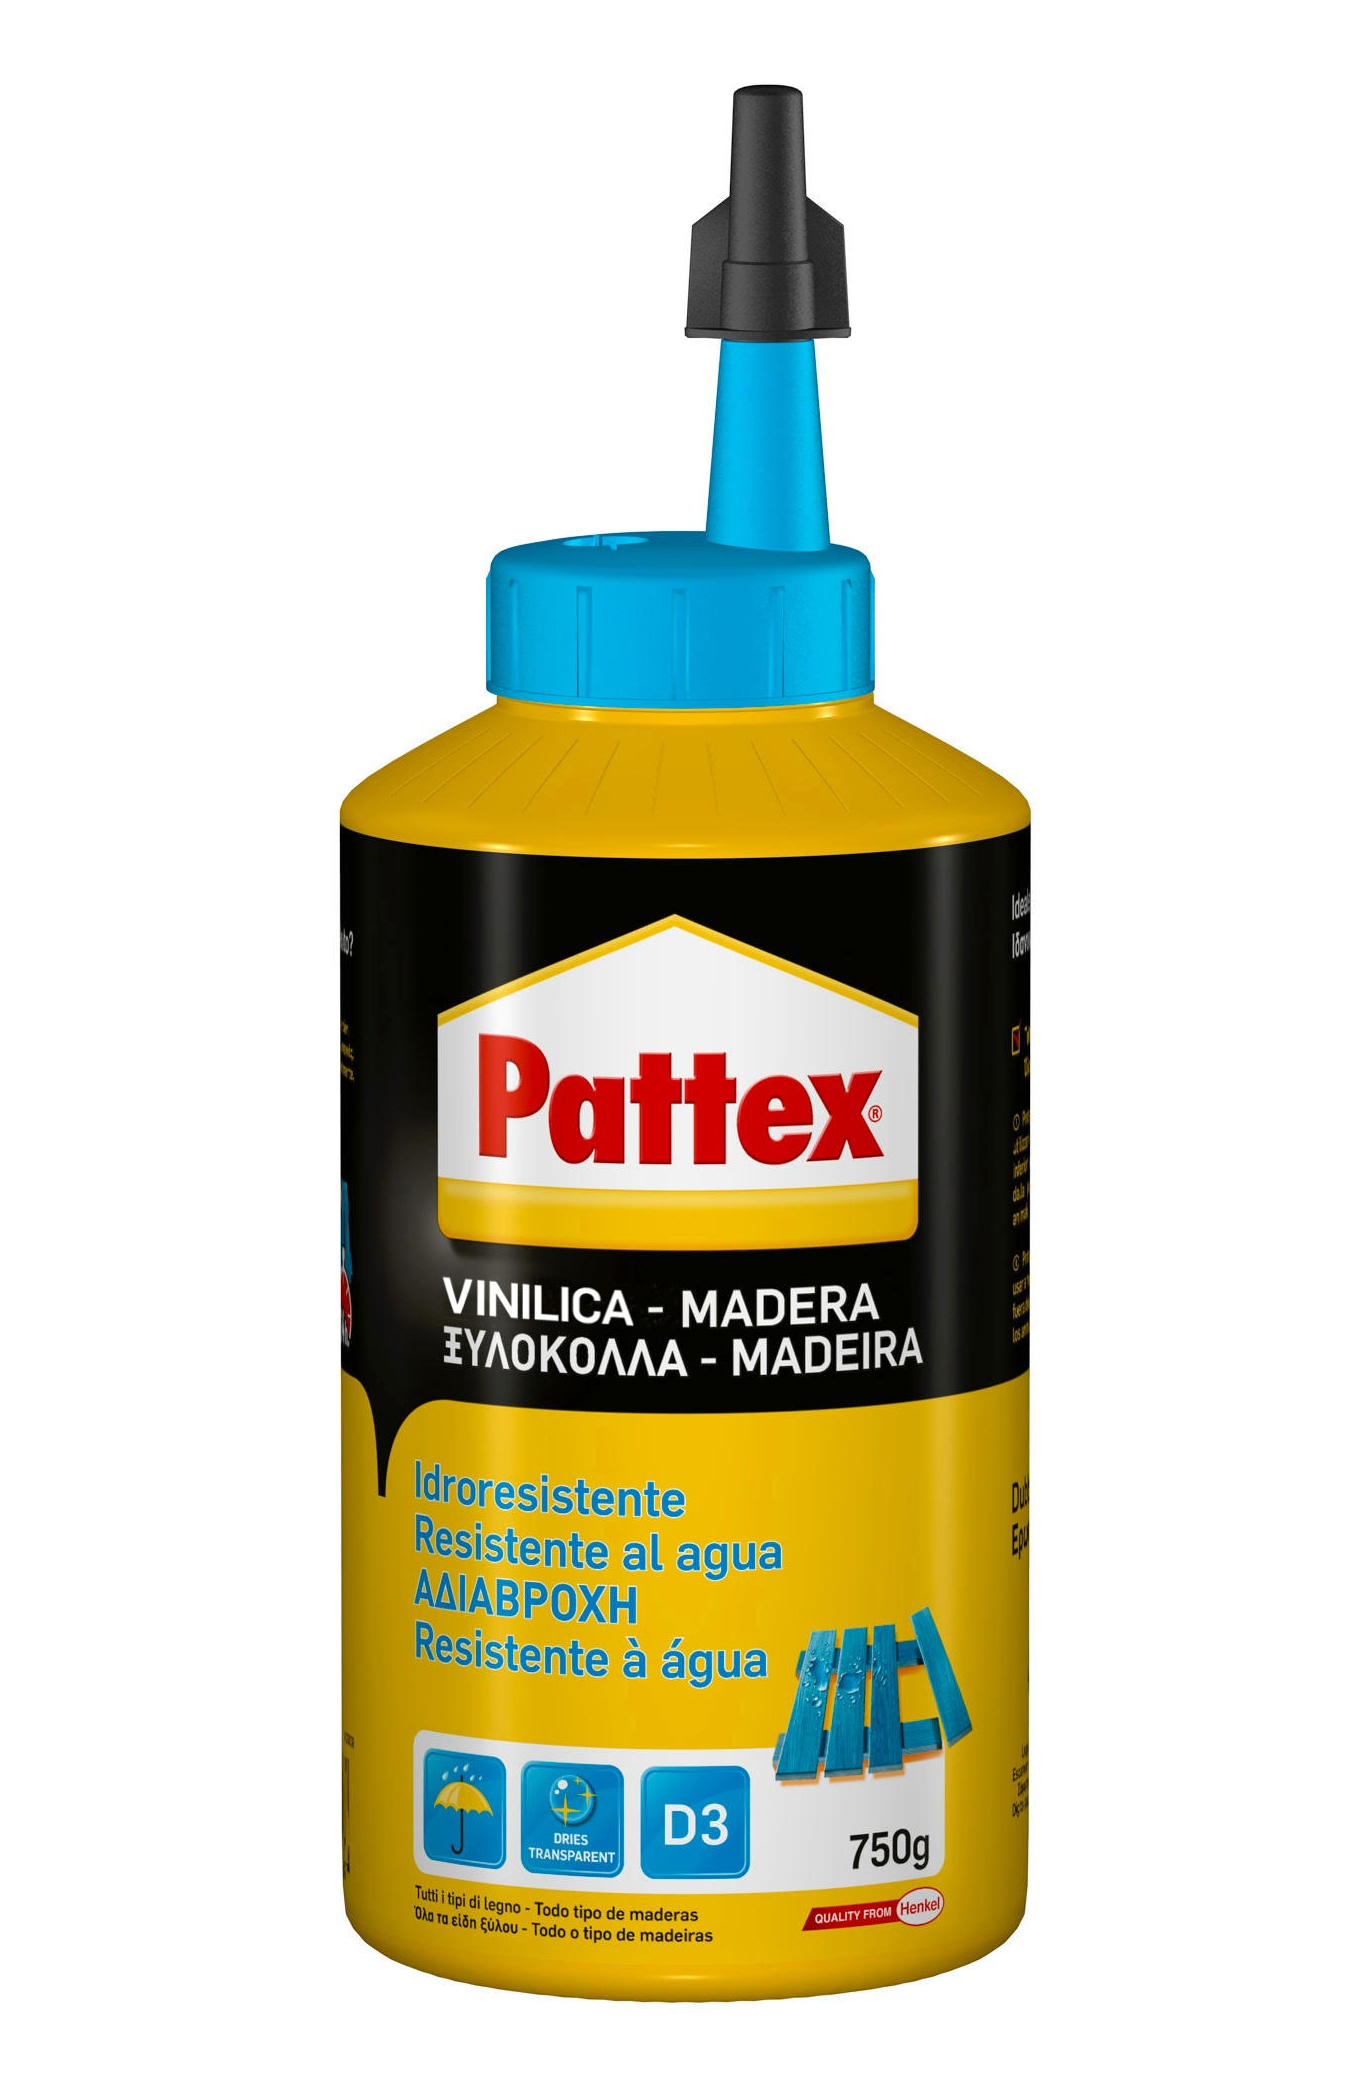 Pattex vinilica idroresistente  750g